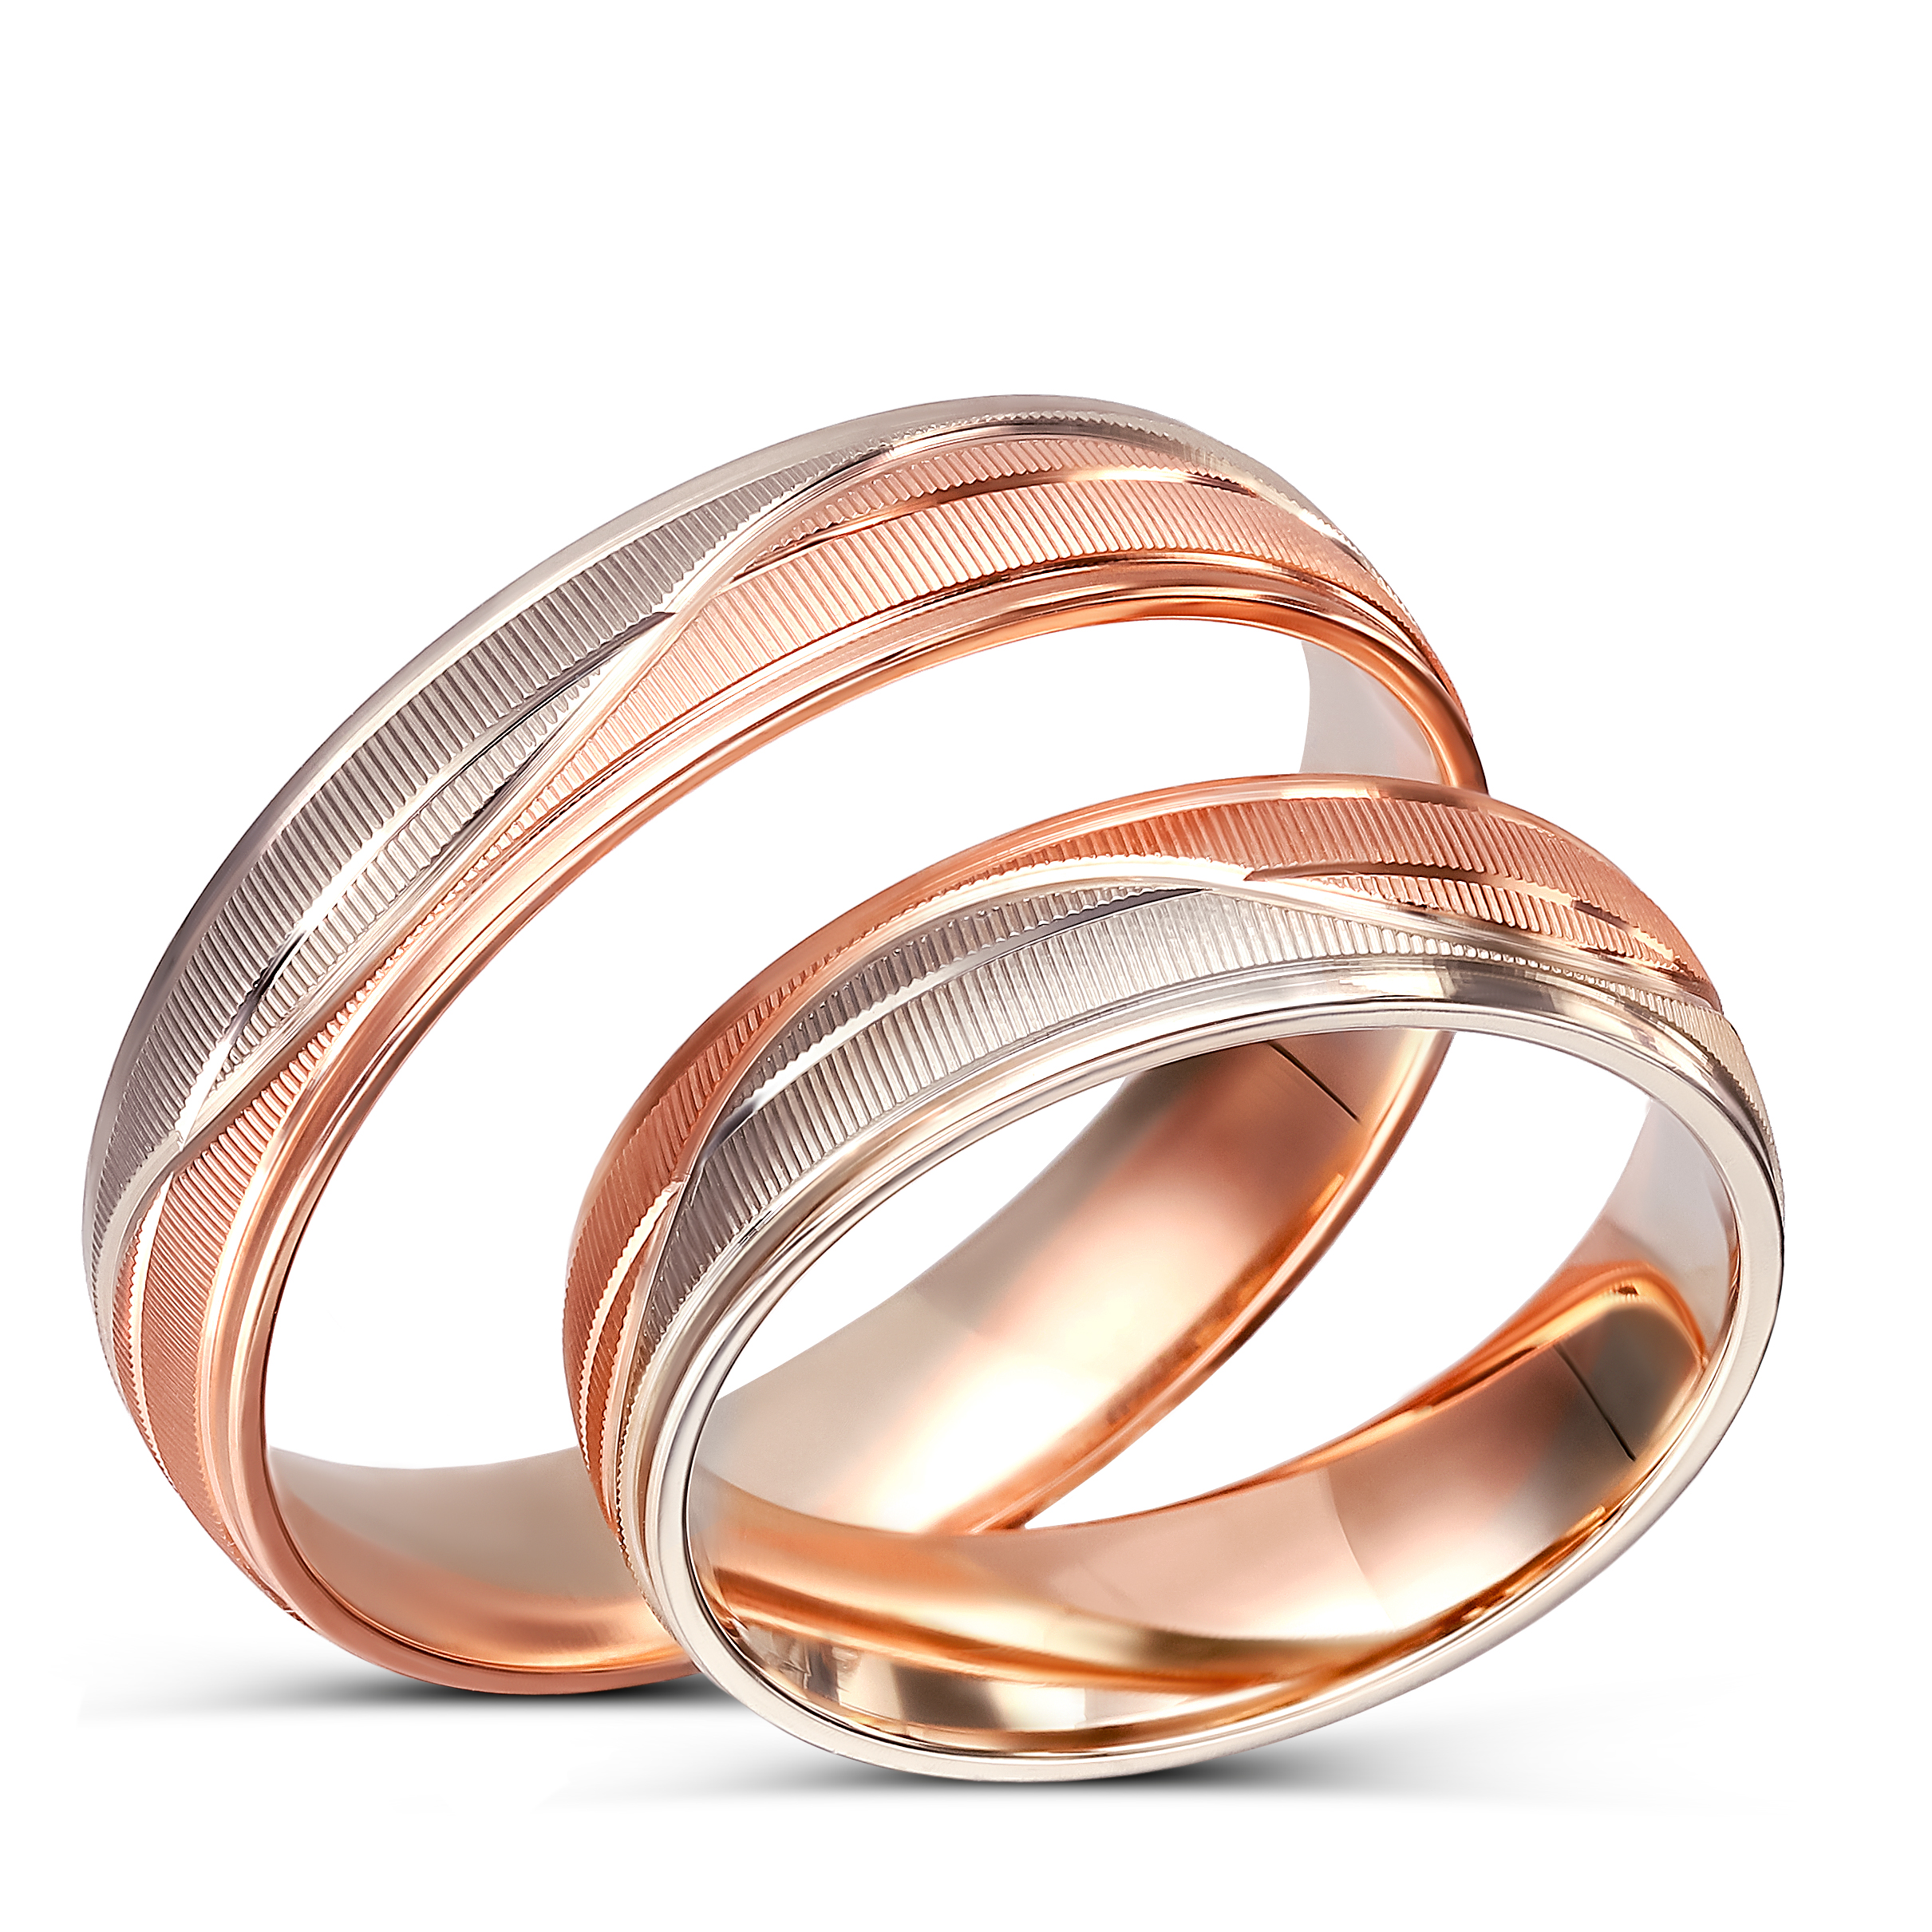 Obrączki ślubne z biało-różowego złota matowe półokrągłe OCH115O, próba 585